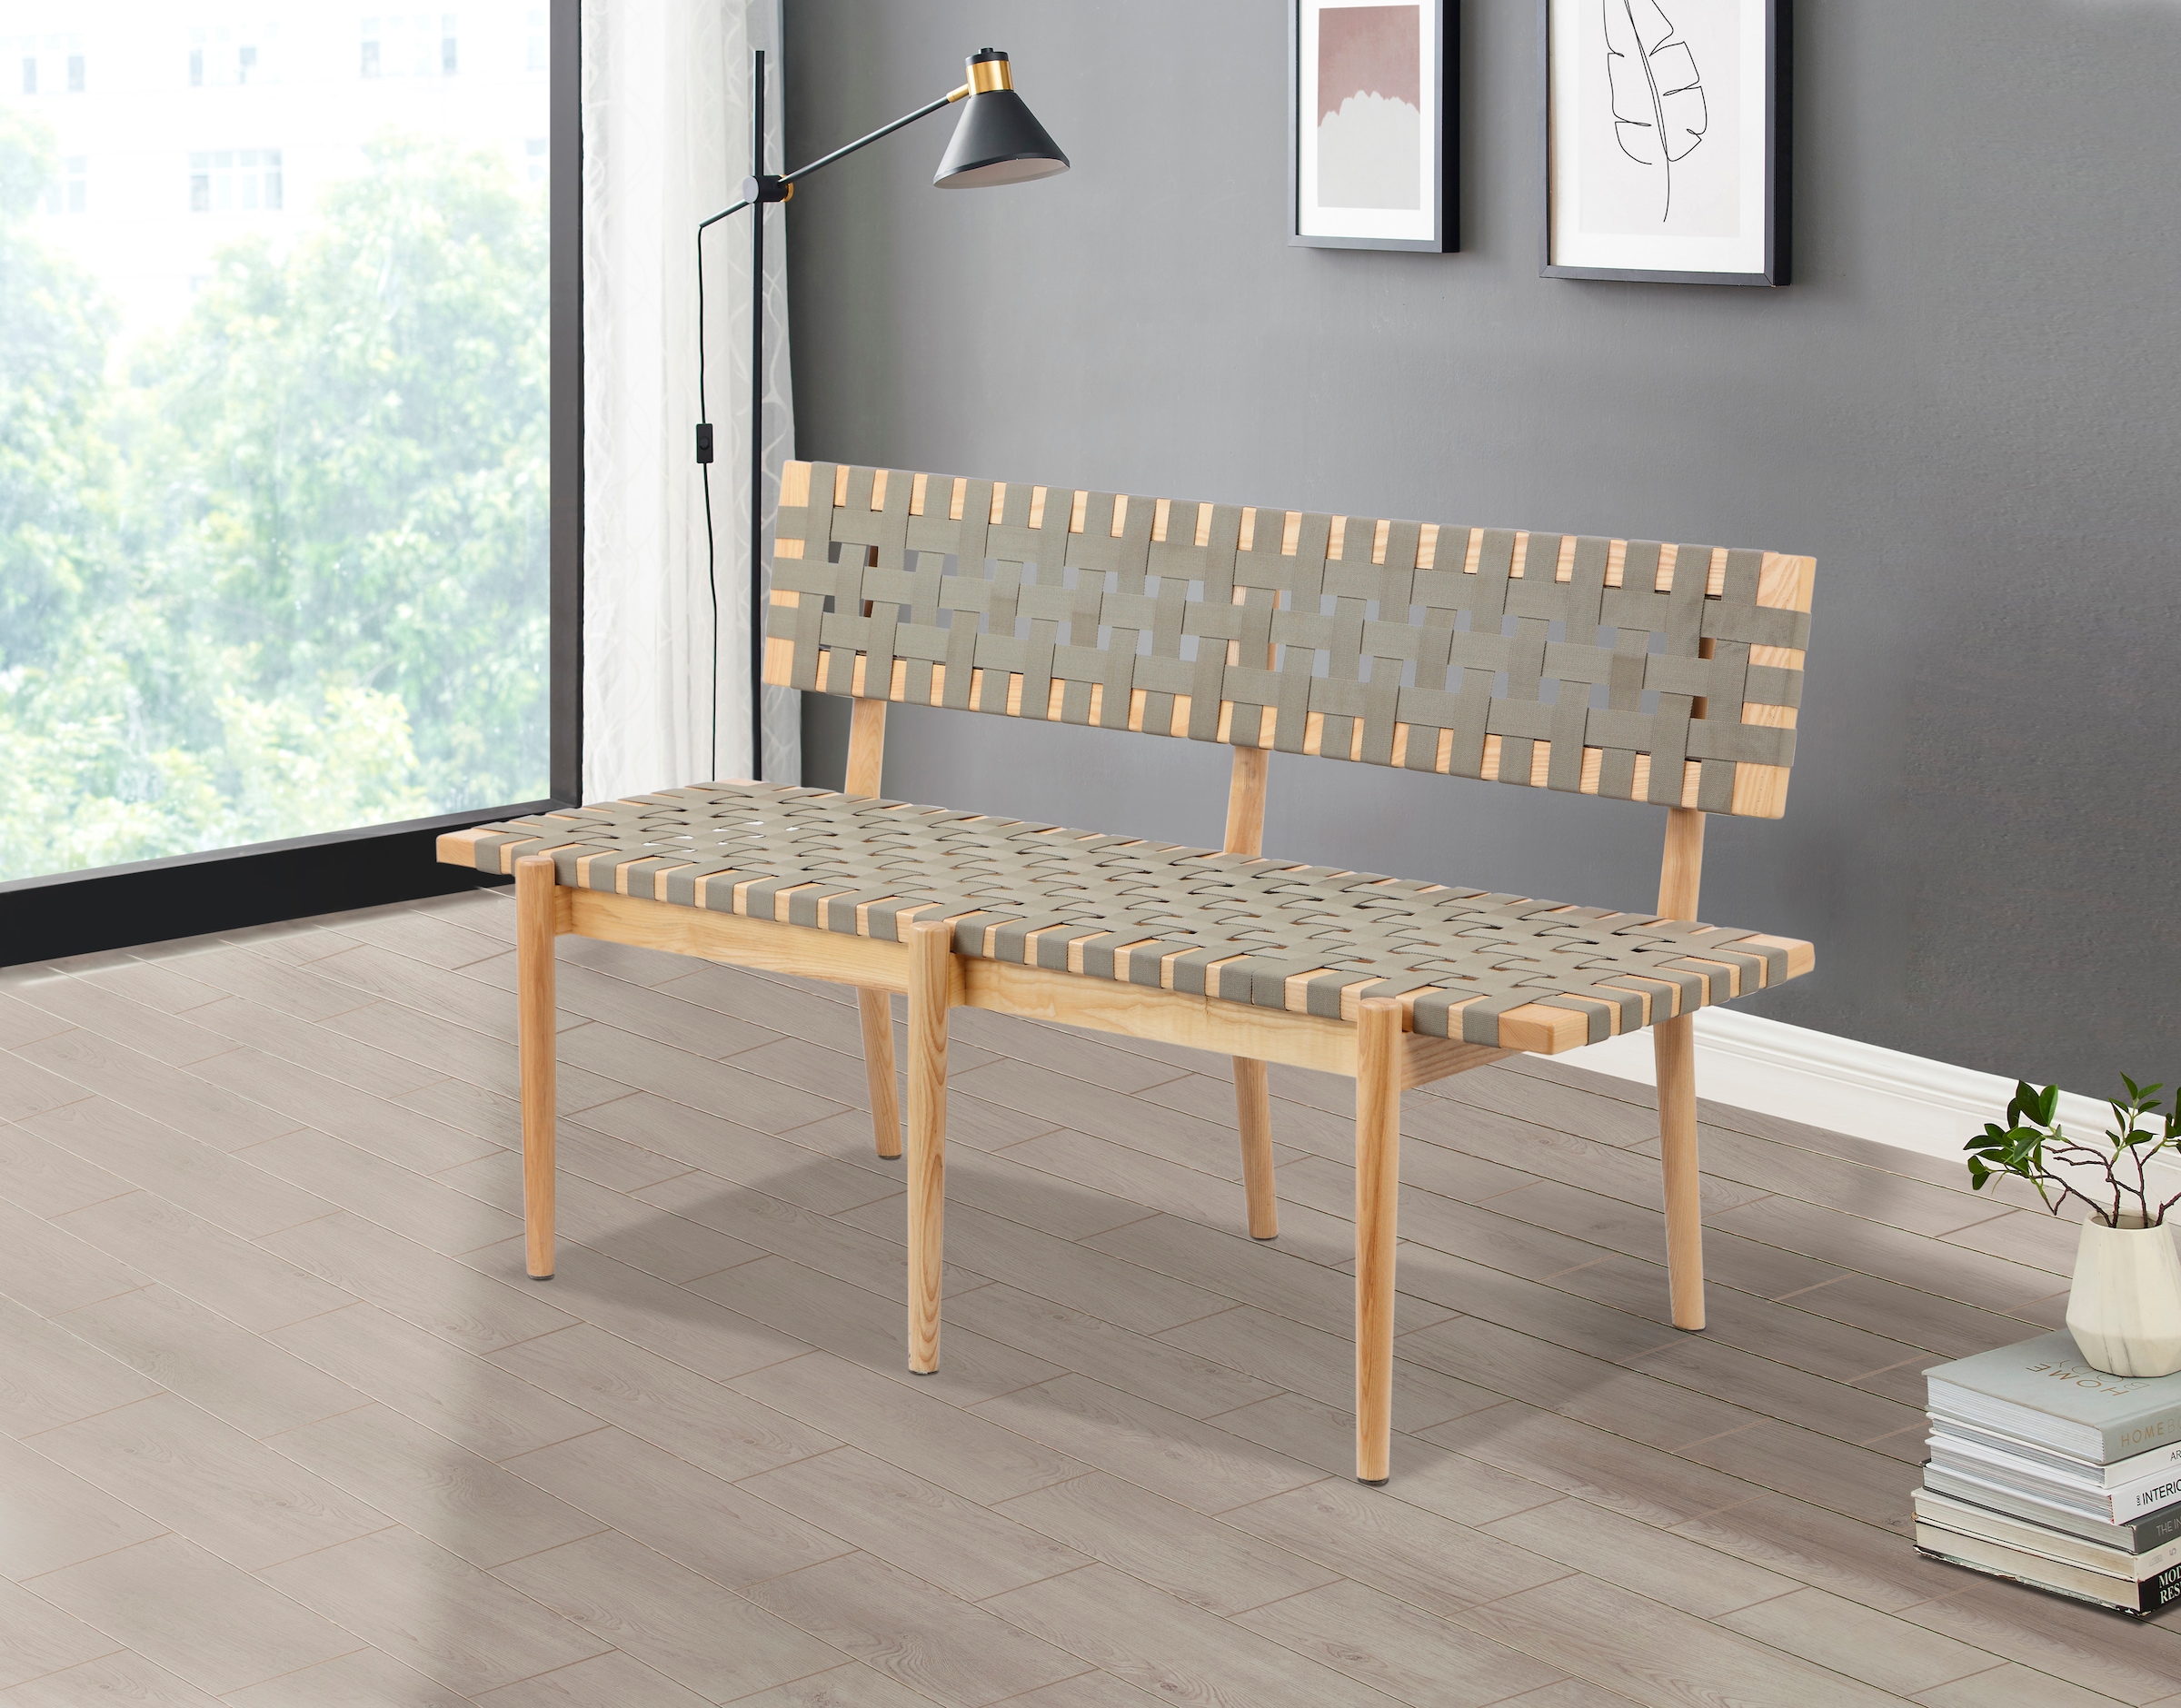 Sitzbank »Jorunn«, In 2 Farben erhältlich, aus massivem Eschenholz, Breite 140 cm